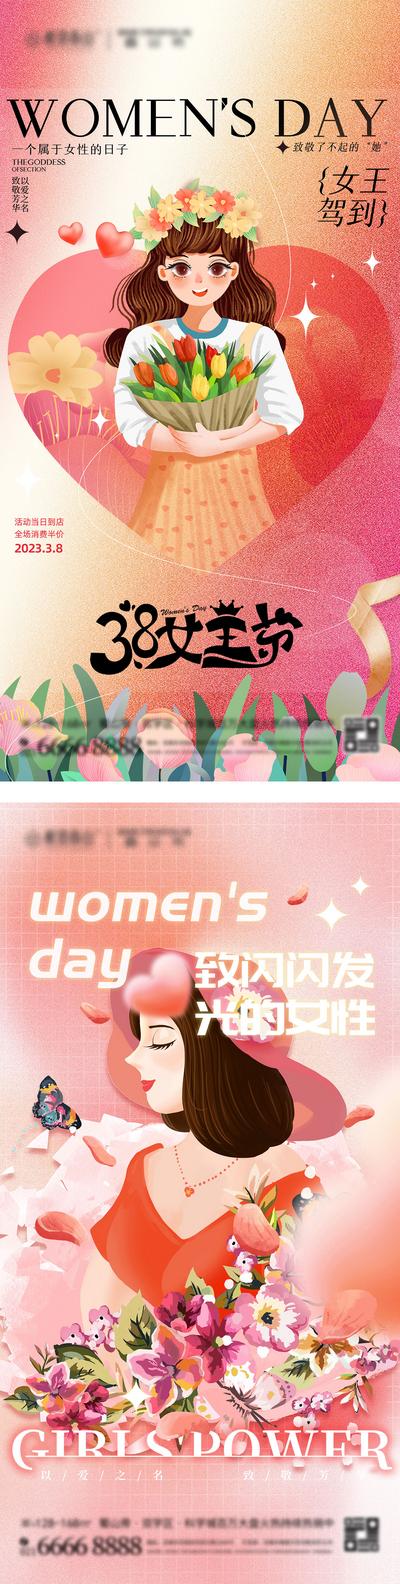 南门网 广告 海报 插画 女王节 房地产 公历节日 三八妇女节 38 女神节 女性 弥散风 手绘